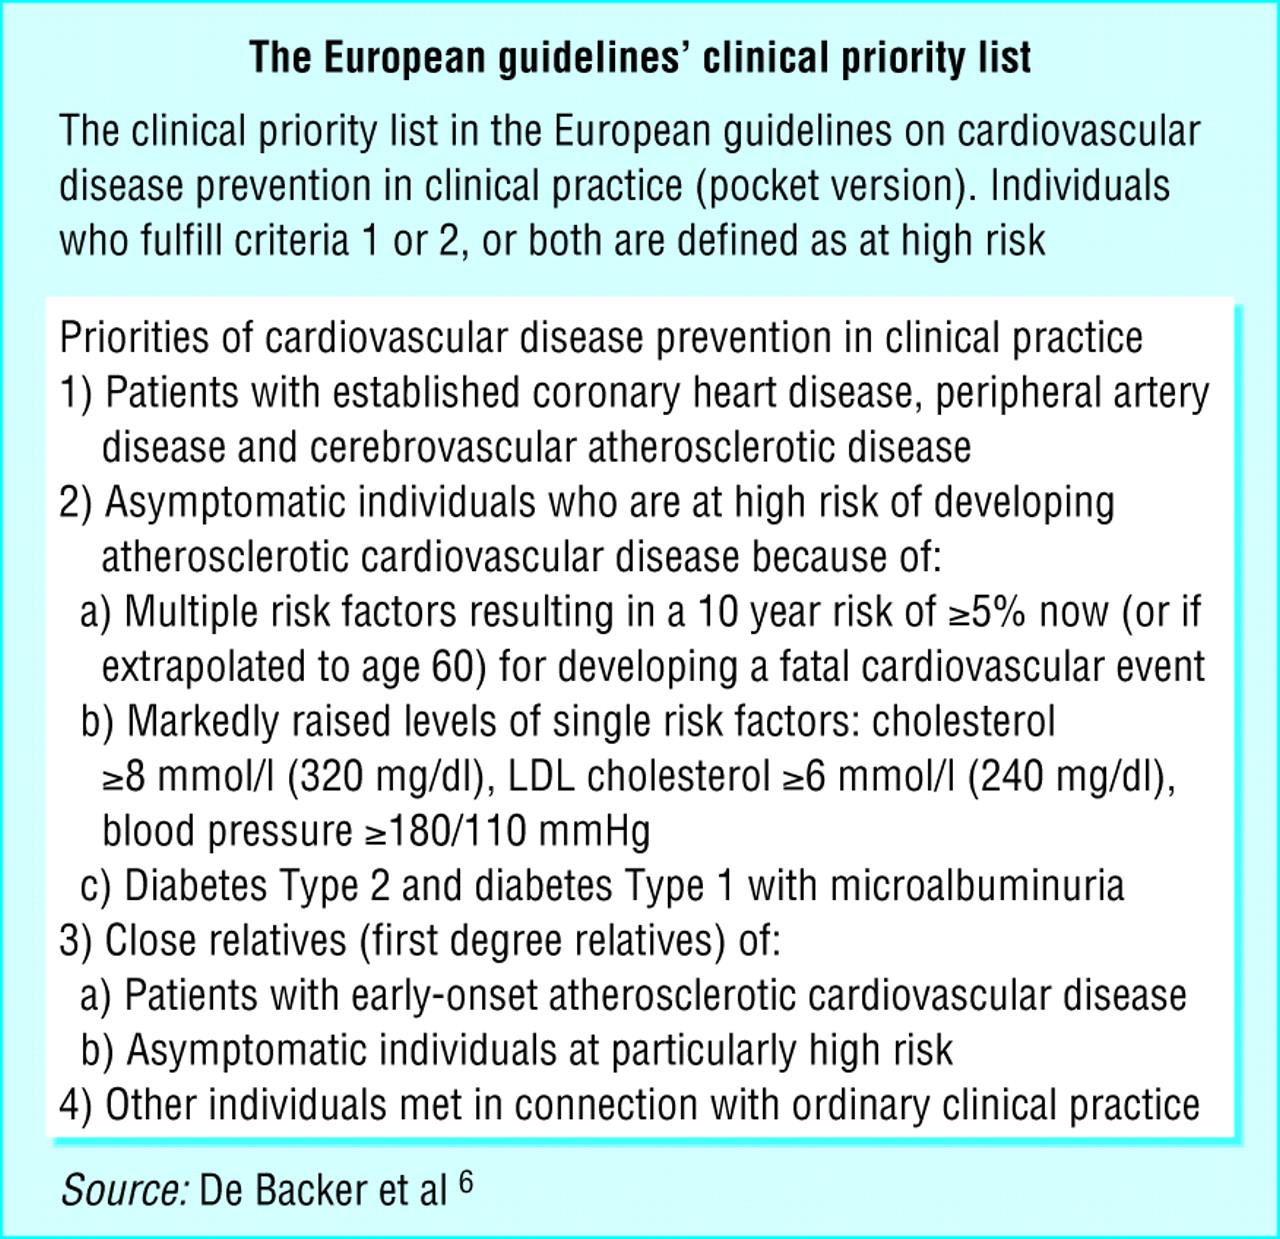 Conroy RM, Pyorala K, Fitzgerald AP, Sans S, Menotti A, De Backer G, et al. Estimation of ten-year risk of fatal cardiovascular disease in Europe: the SCORE project. Eur Heart J 2003; 24: 9871003.